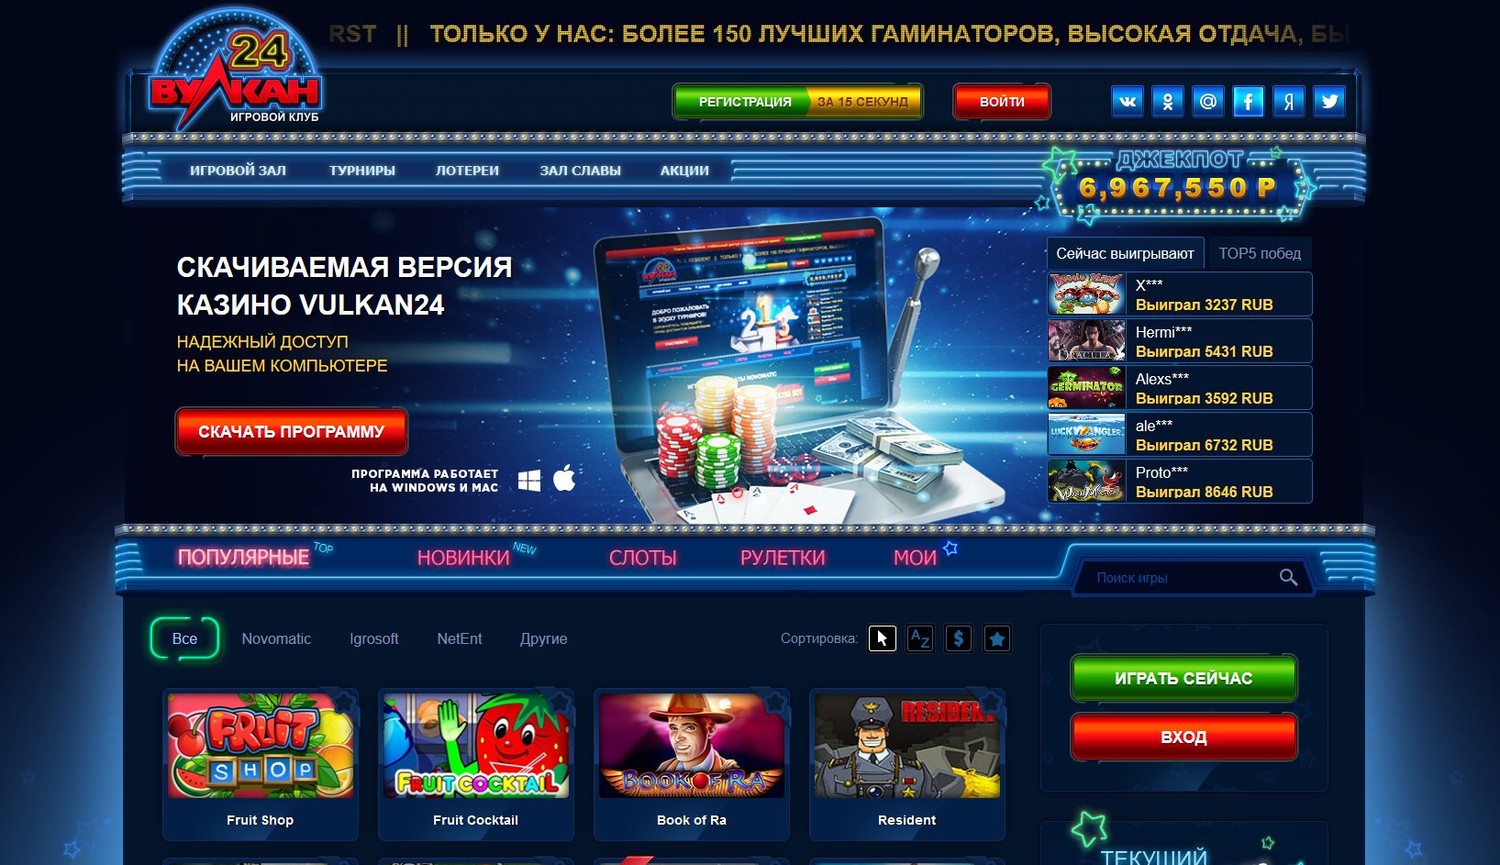 Вулкан 24 официальный сайт казино мобильная версия скачать игровые автоматы на компьютер бесплатно лягушки